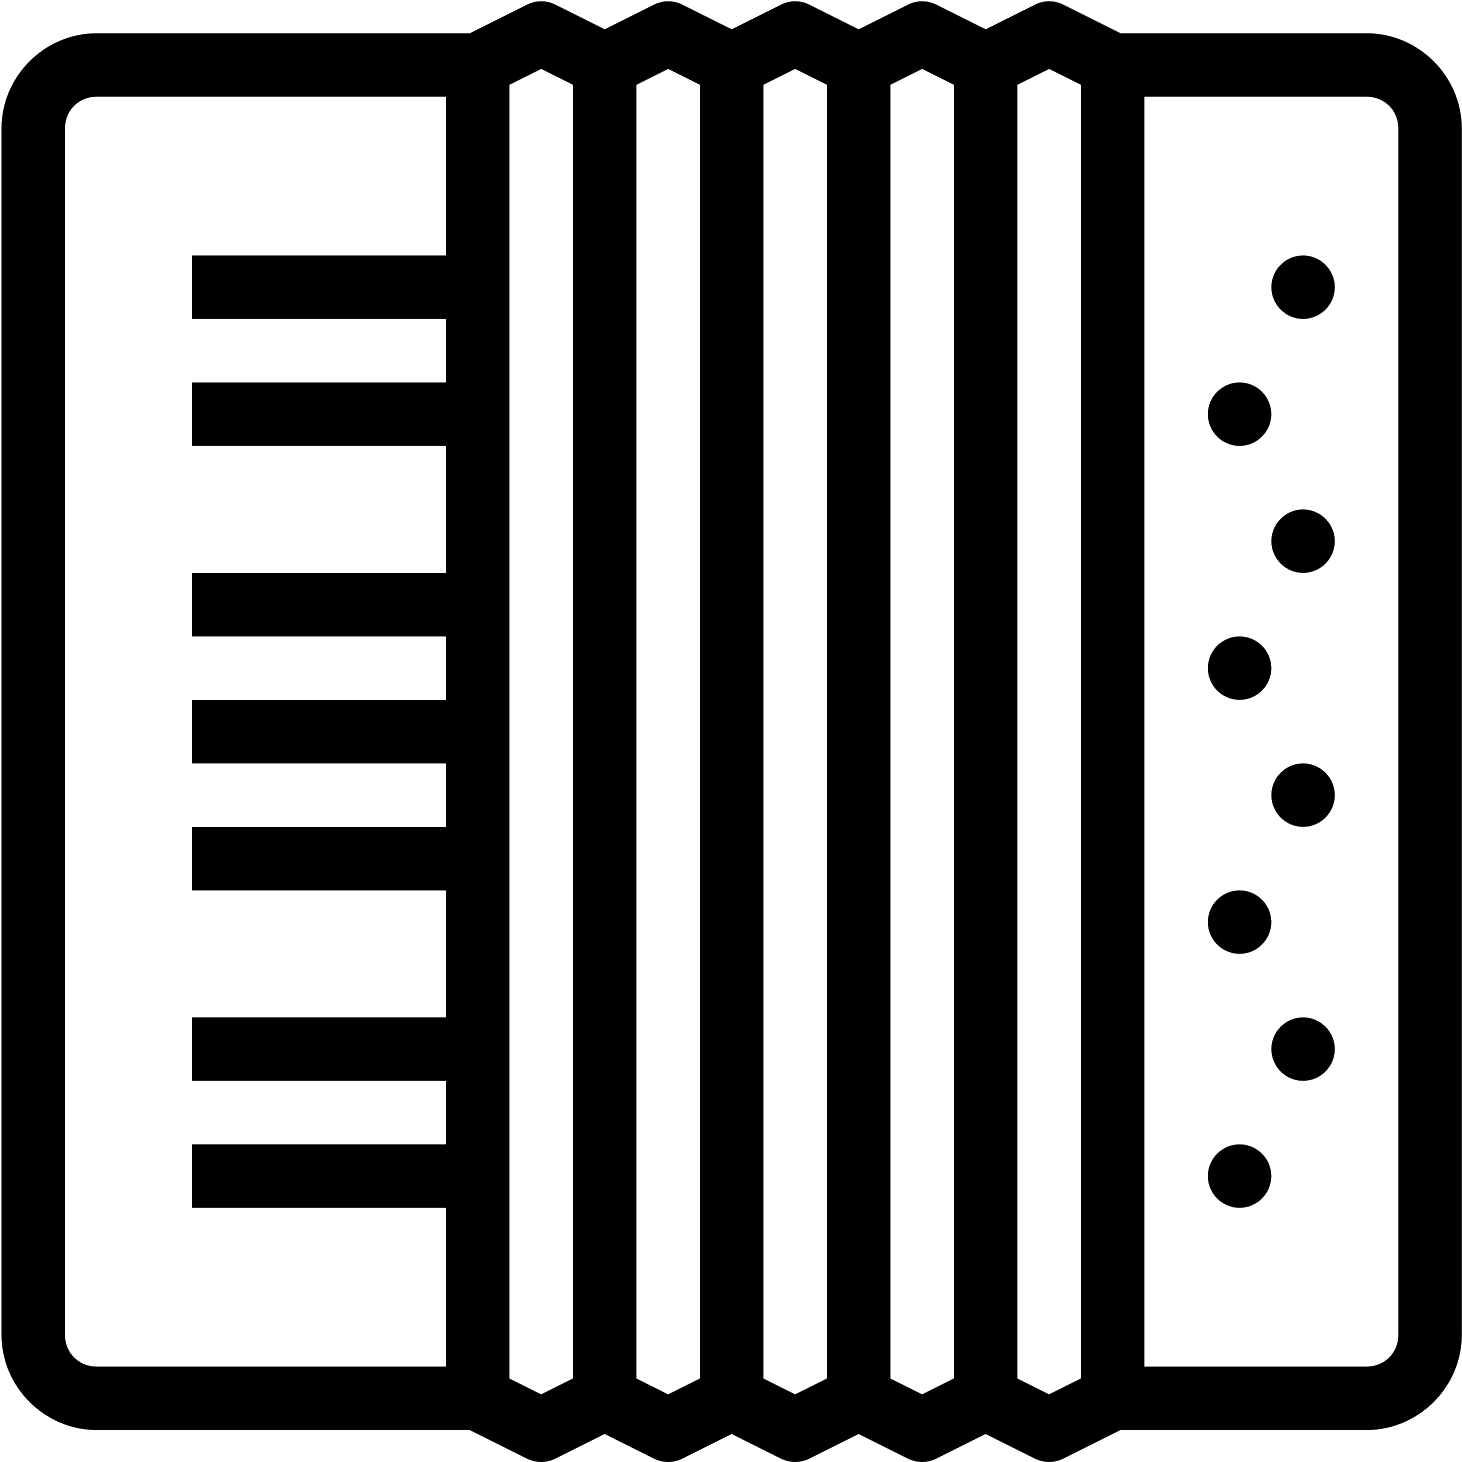 Immagine Trasparente PNG di fisarmonica vettoriale